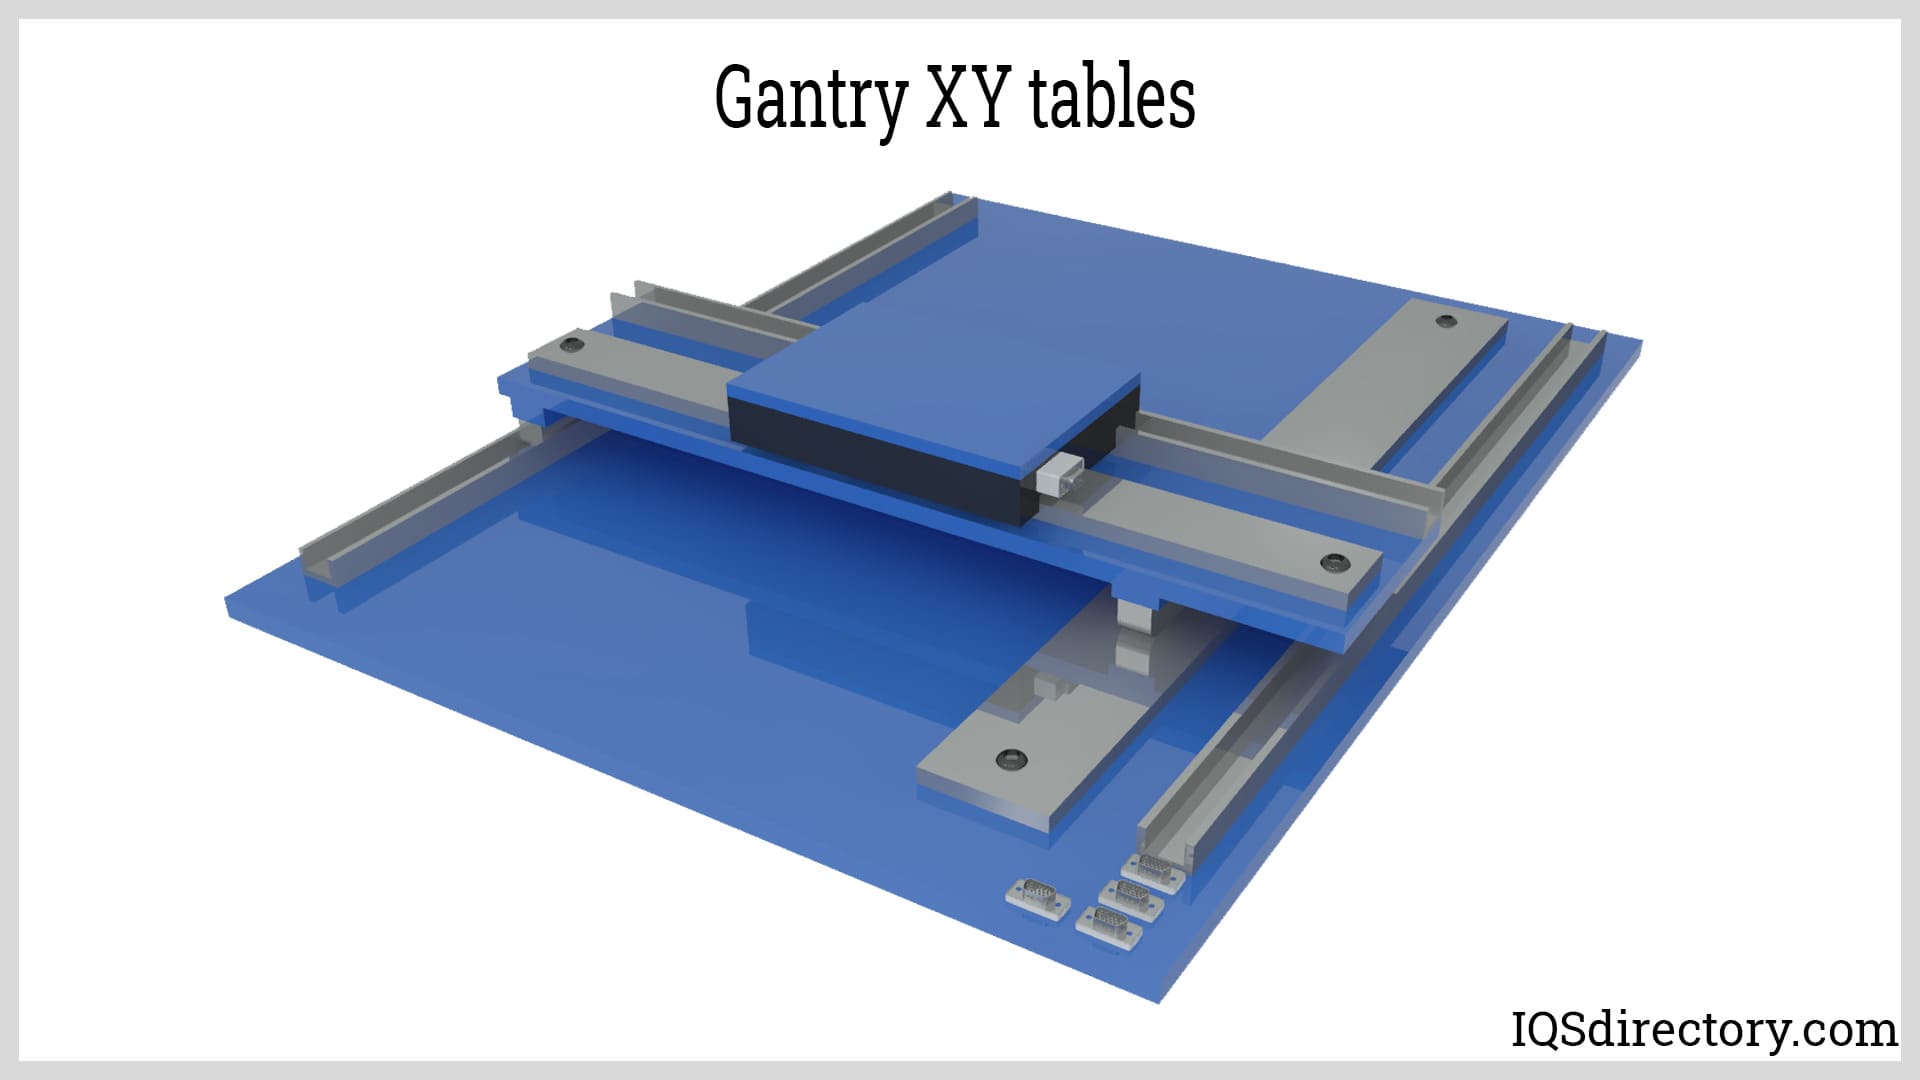 Gantry XY Tables